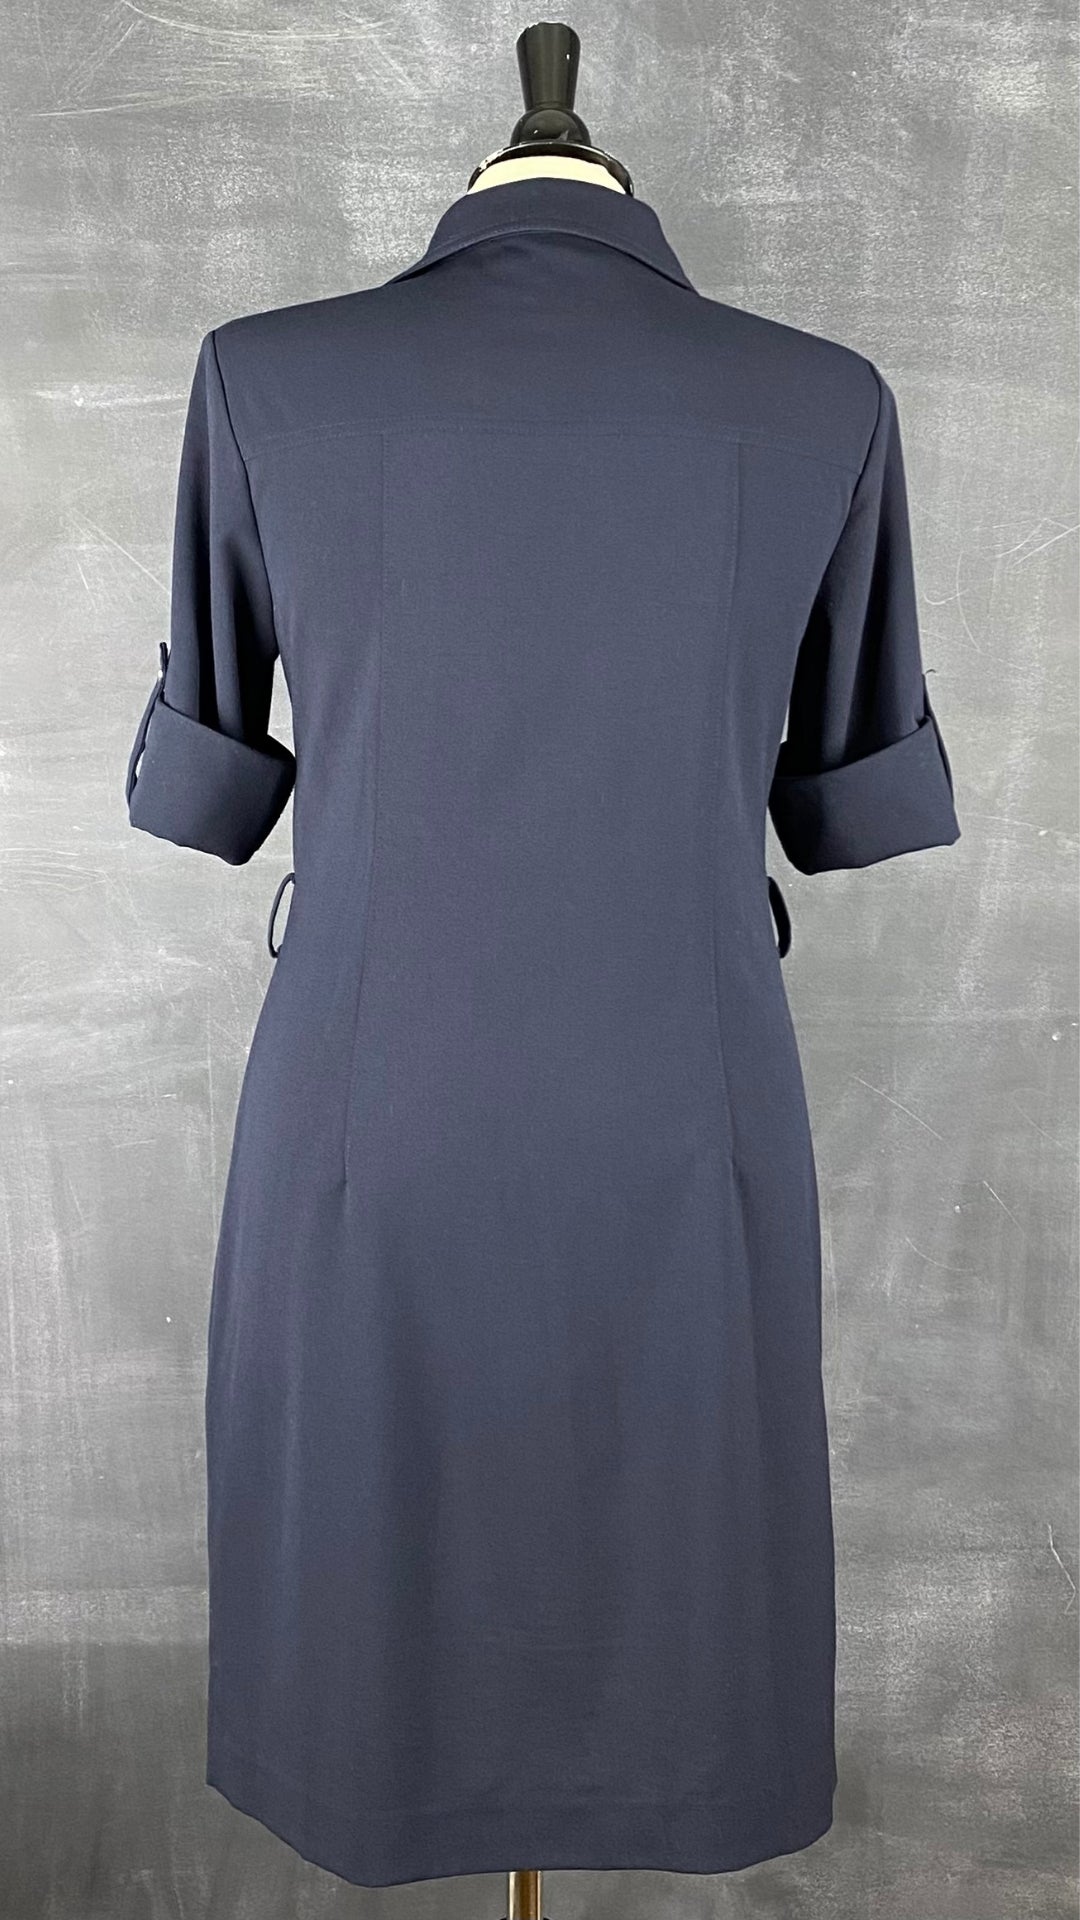 Robe utilitaire marine Michael Kors. Polyvalente et facile à agencer, cette robe est une base de la garde-robe. Vue de dos.